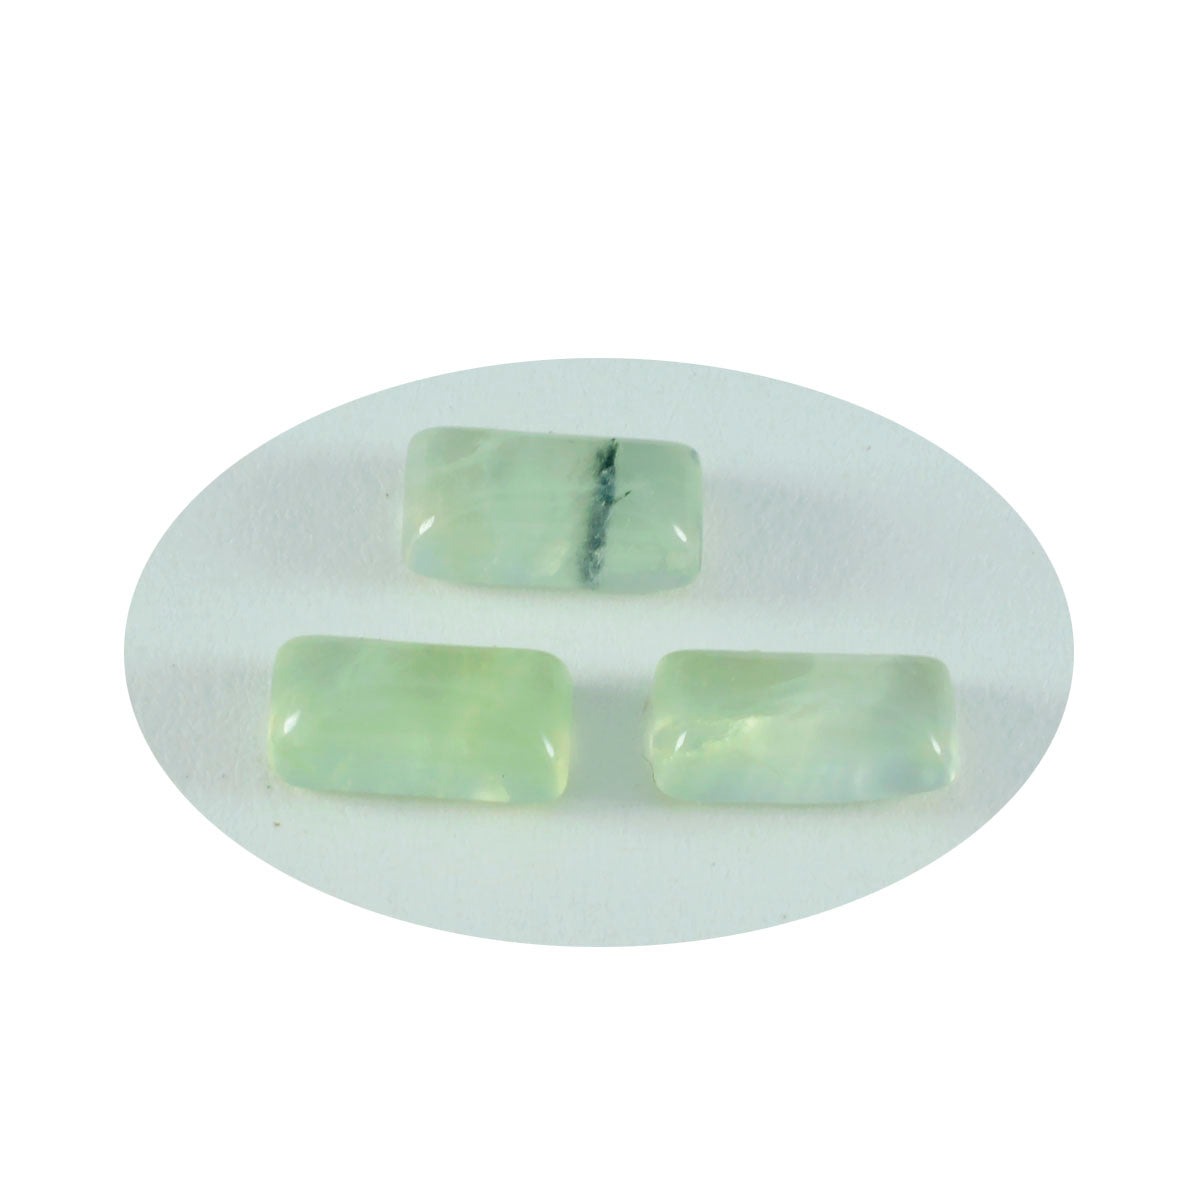 Riyogems – cabochon en préhnite verte, 9x18mm, en forme de baguette, pierres précieuses en vrac de qualité fantastique, 1 pièce